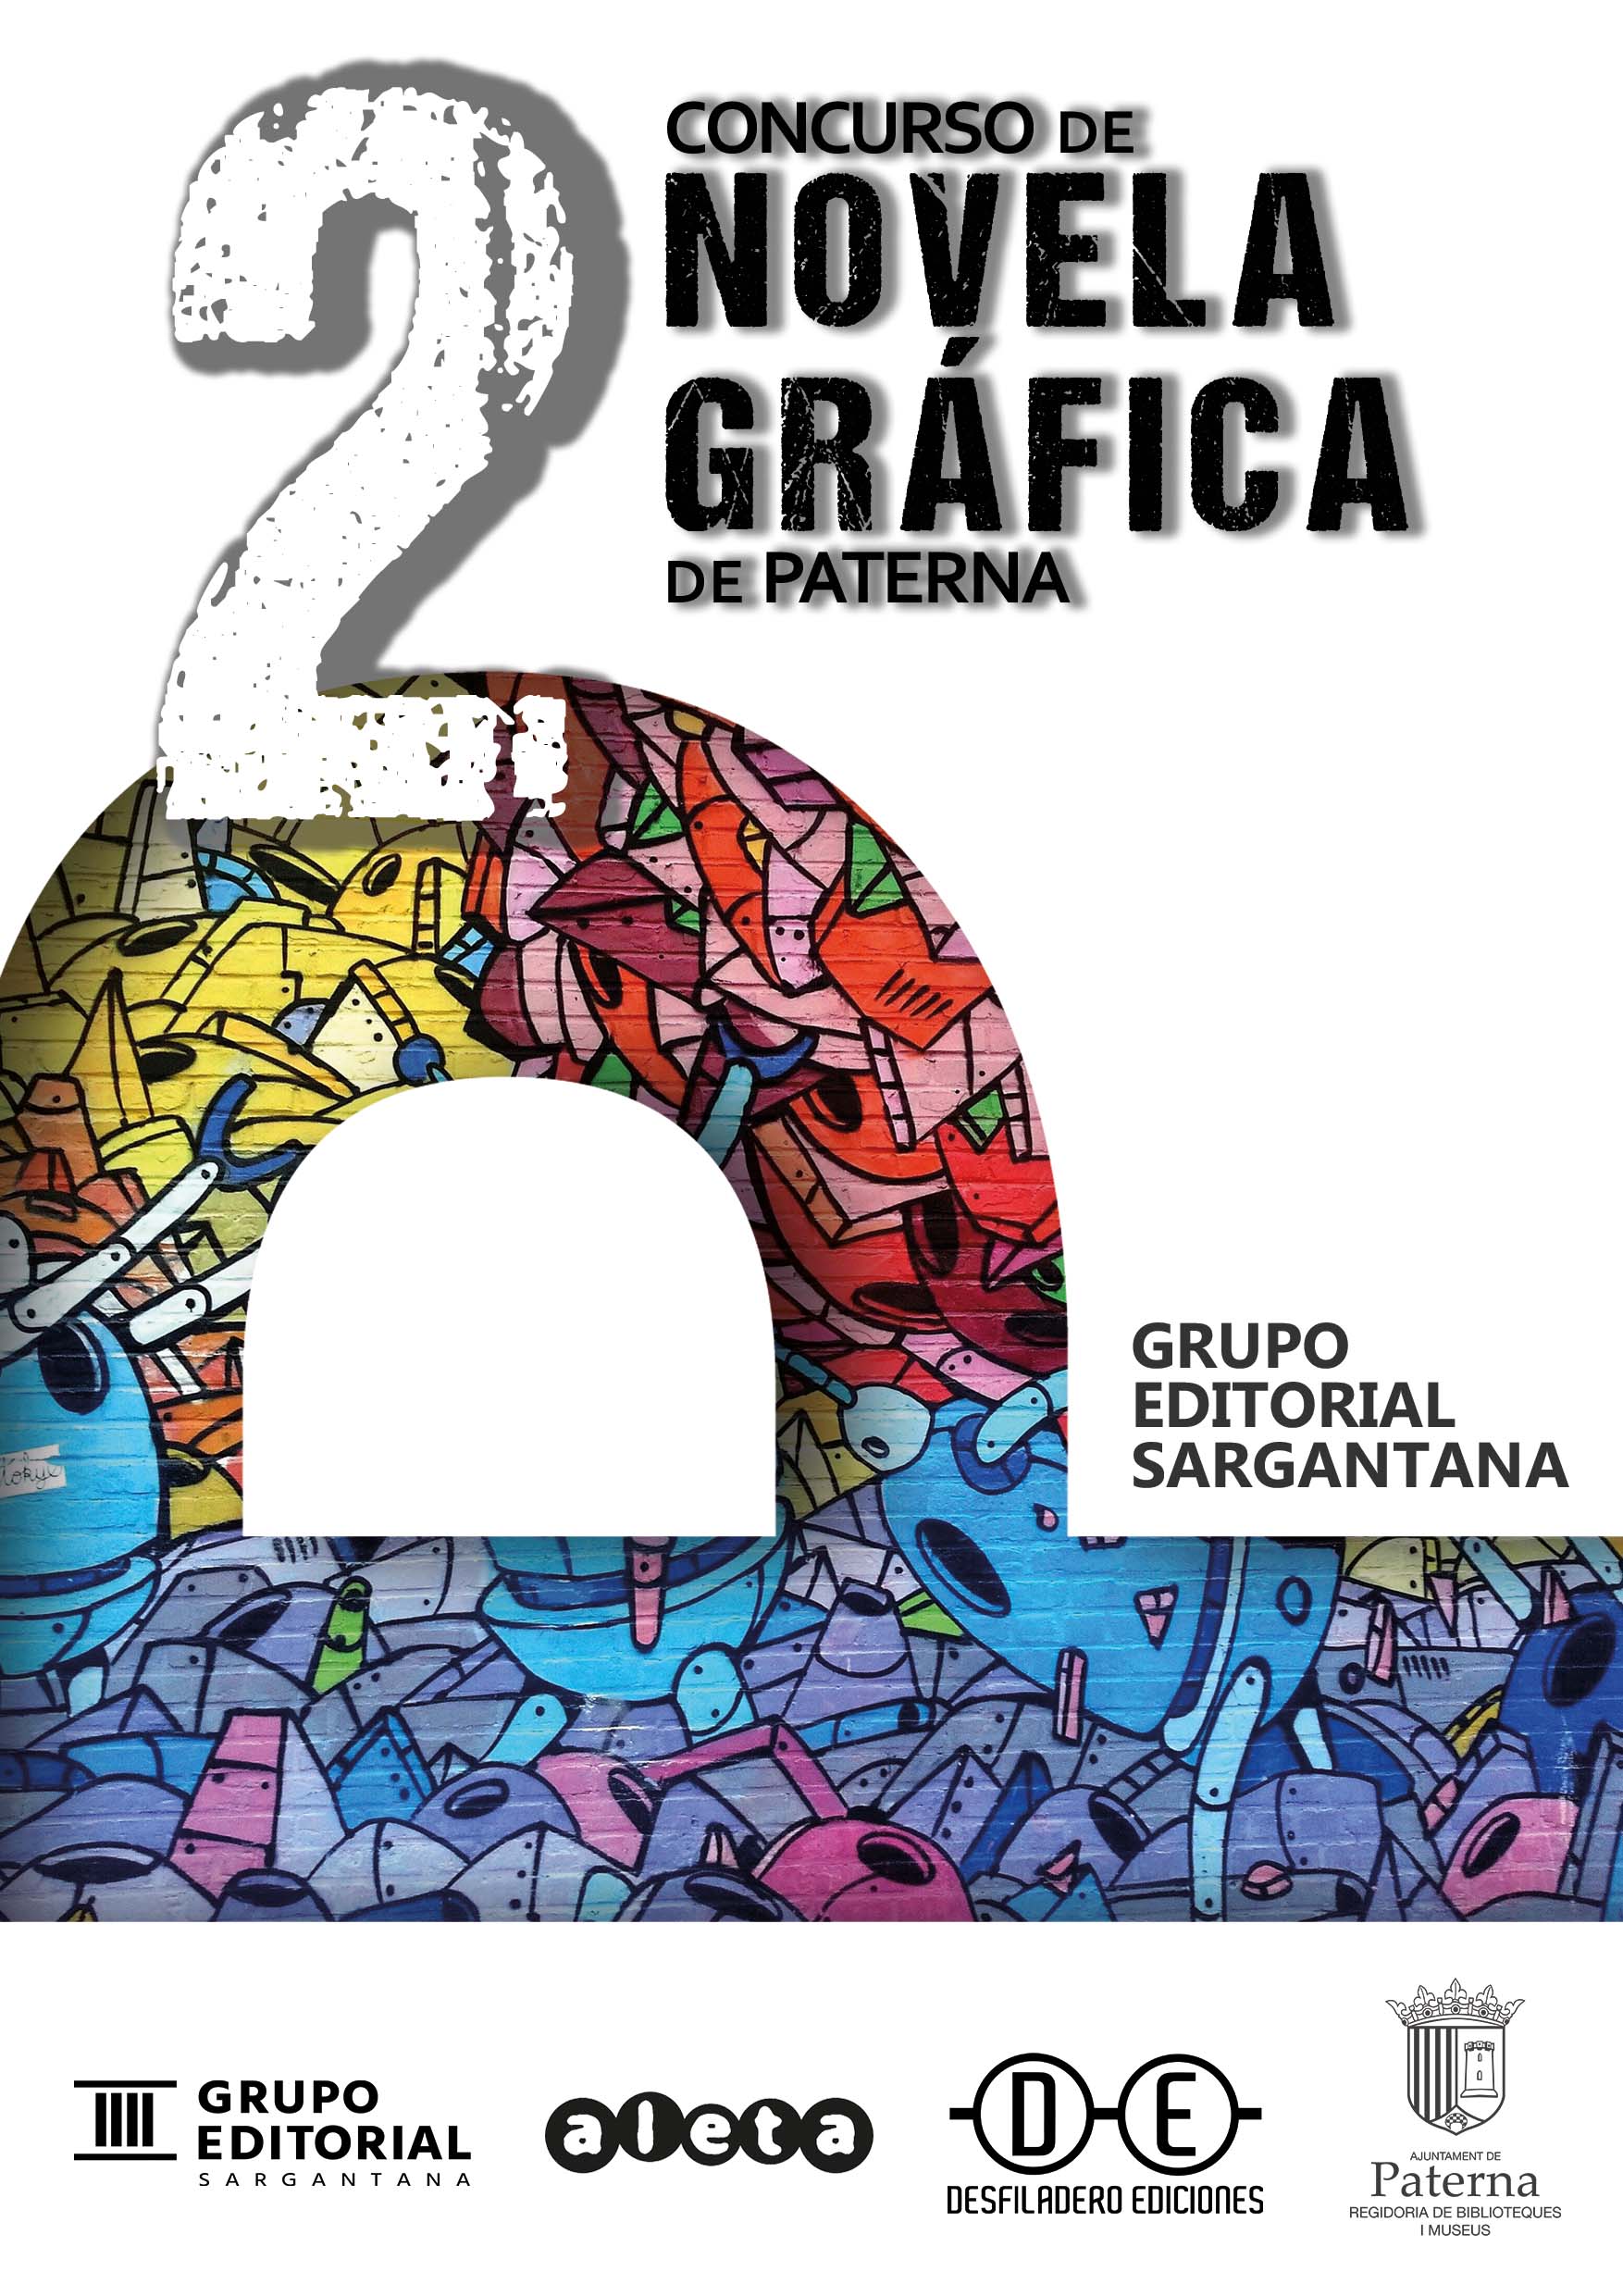 II Concurso de Novela Gráfica de Paterna